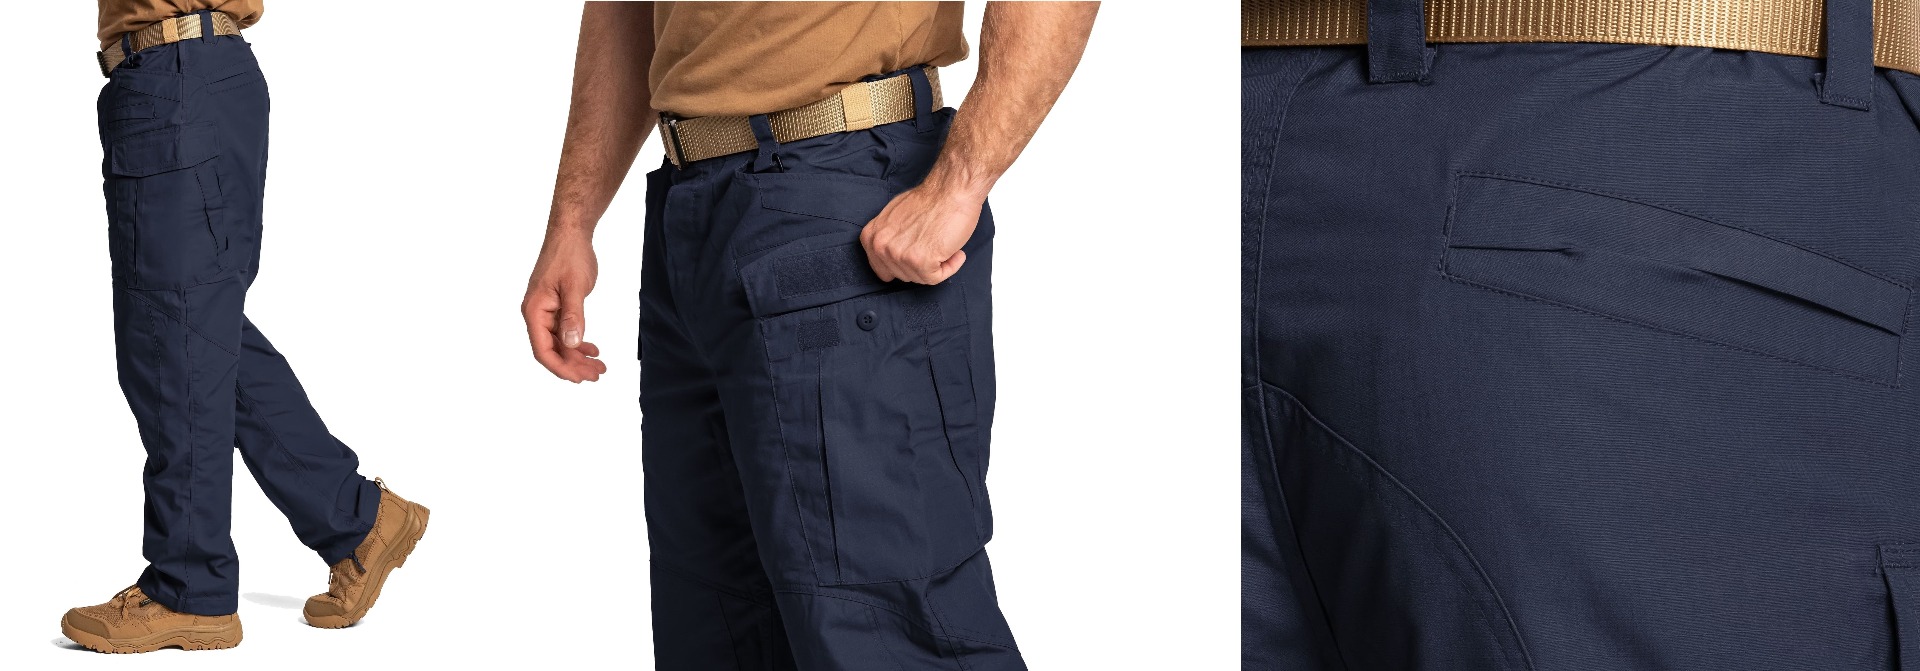 Ponujamo kakovostne Helikon SFU Next polycotton rip-stop hlače v temno modri barvi. Trpežne vojaške hlače s taktičnim dizajnom, idealne za moške. Pridobite svoj par danes in stopite v korak z vojaškimi trendi.